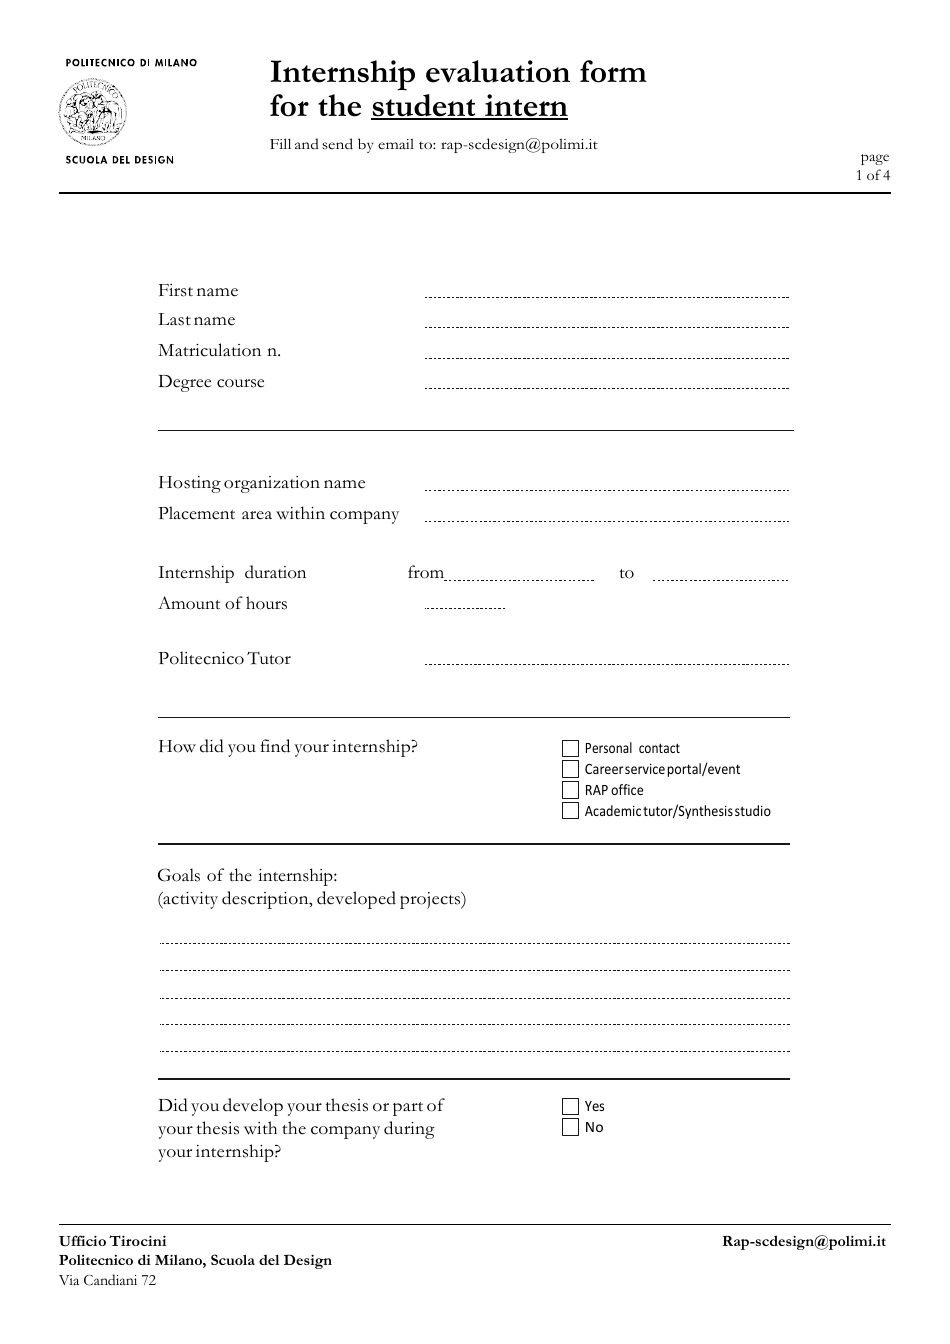 Internship Evaluation Form for the Student Intern - Scuola Del Design, Page 1